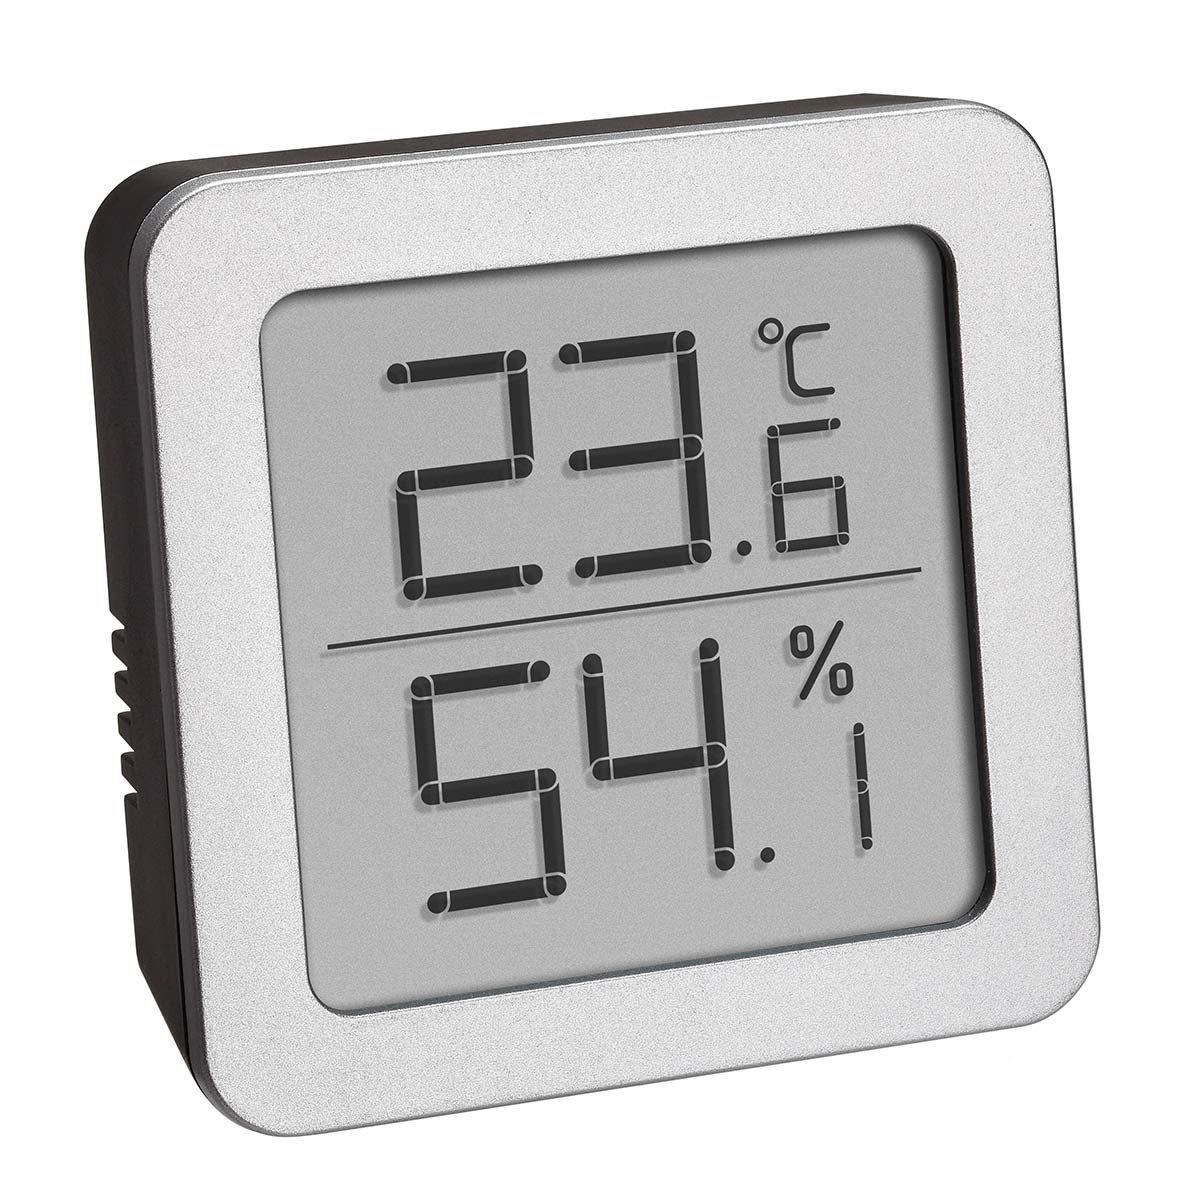 TFA Dostmann TFA-Dostmann 95.2019.54 sensore di temperatura e umidità Interno Temperature & humidity sensor Libera installazione  